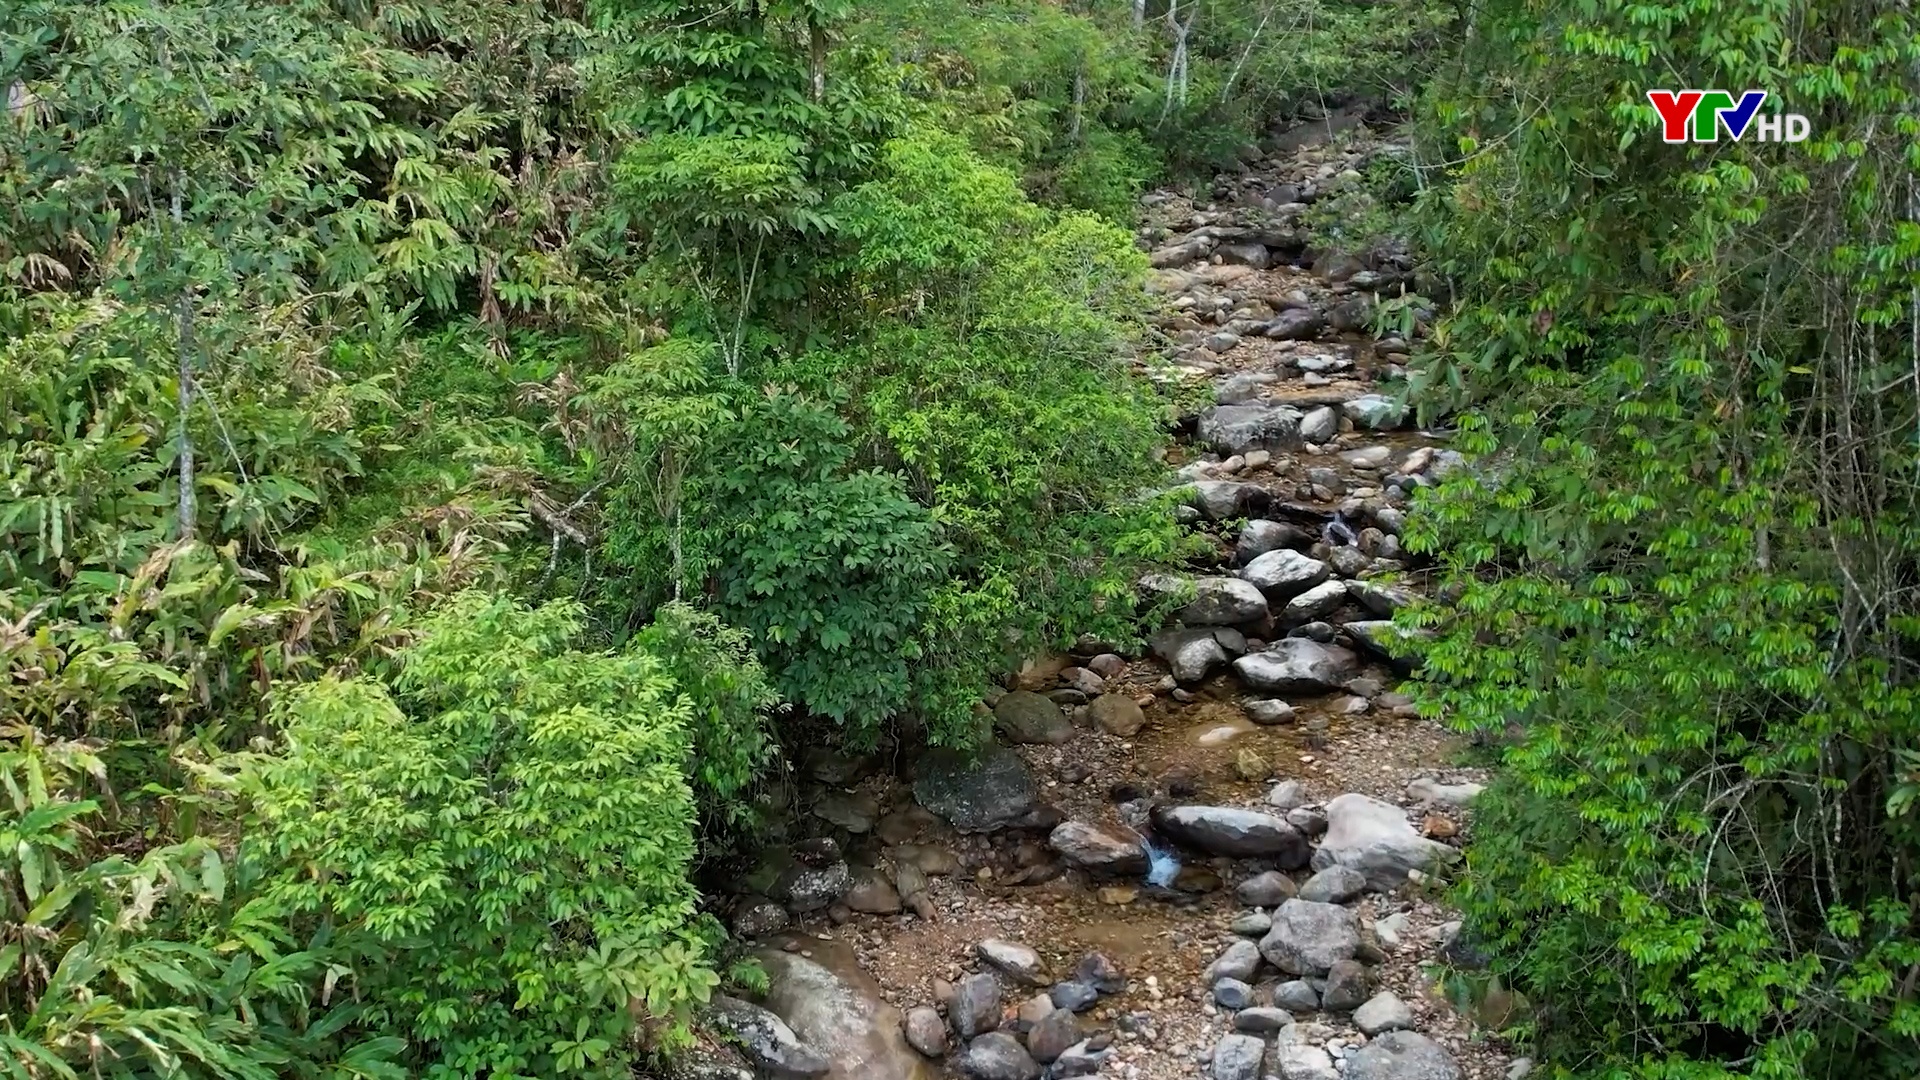 Chế Tạo giữ rừng để bảo vệ môi trường và có nguồn nước phục vụ đời sống người dân